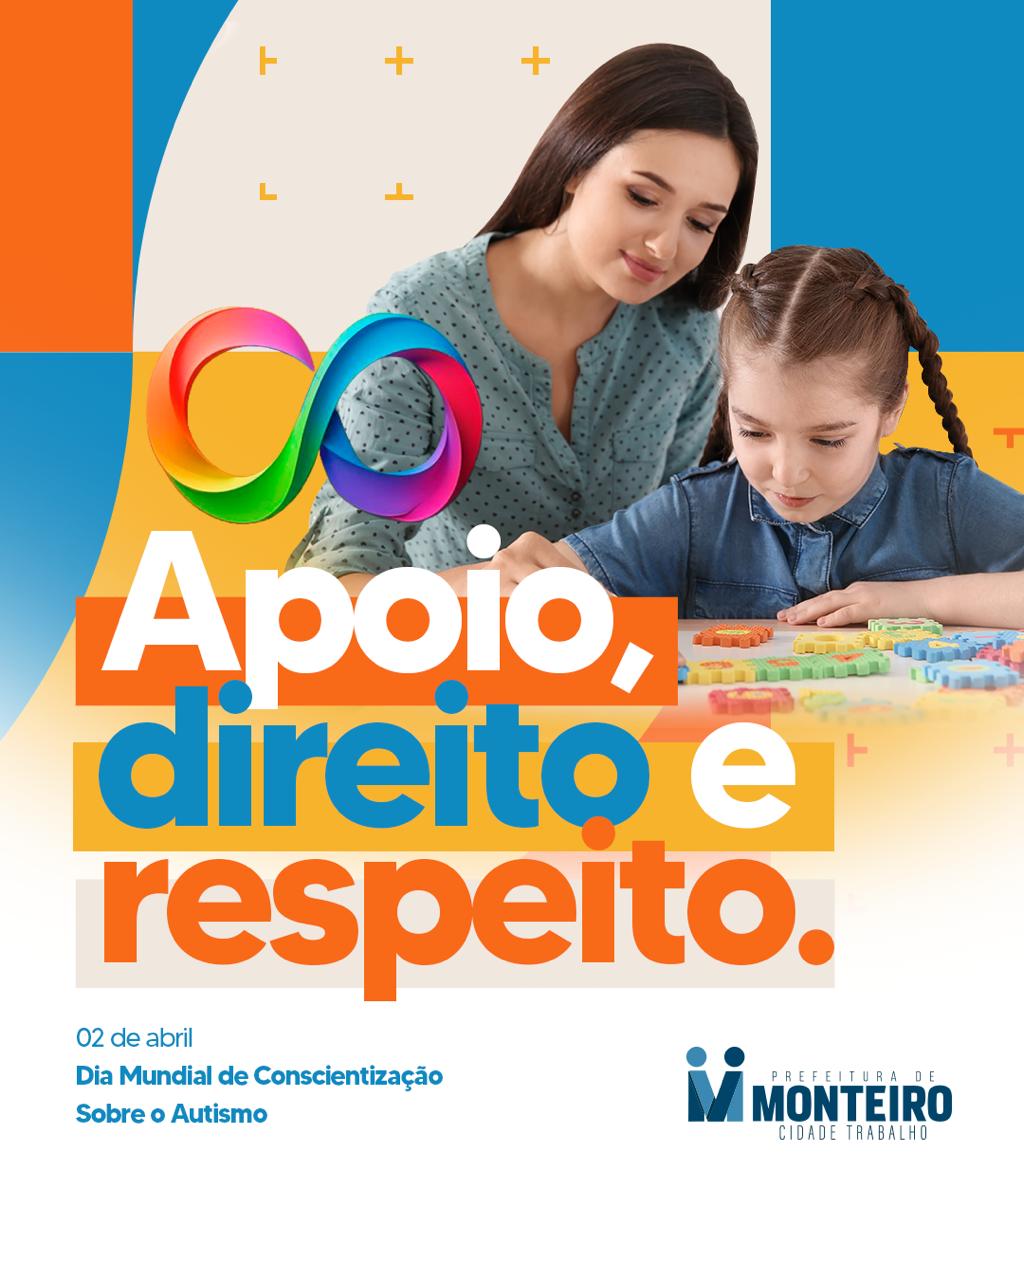 ABRIL-AZUL-2 ABRIL AZUL: Em Dia Mundial de Conscientização sobre o Autismo, Secretaria de Saúde de Monteiro inicia mês trazendo informações importantes sobre o tema